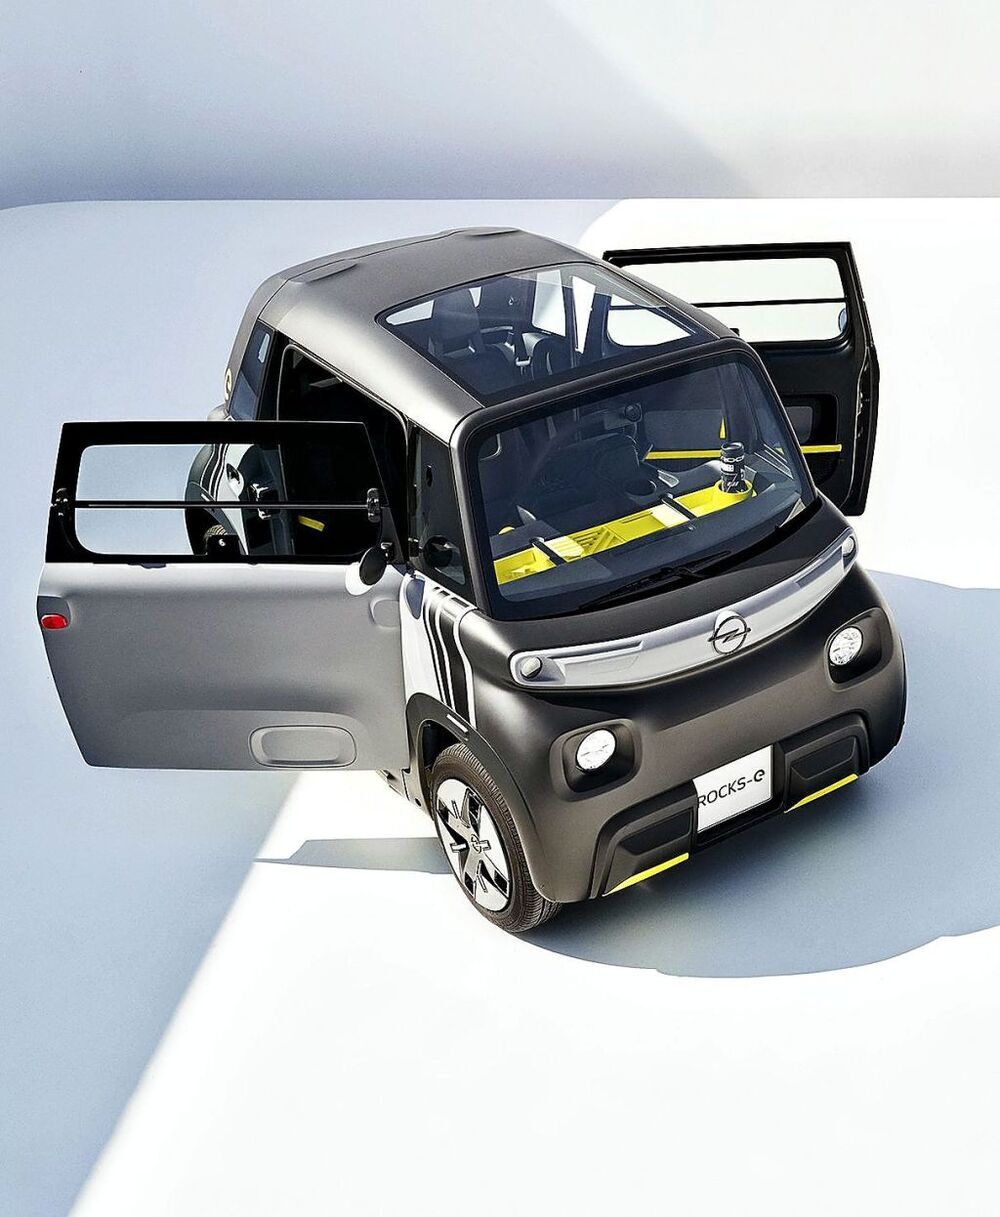 Nuevo Opel Rocks-e, un eléctrico para ciudad